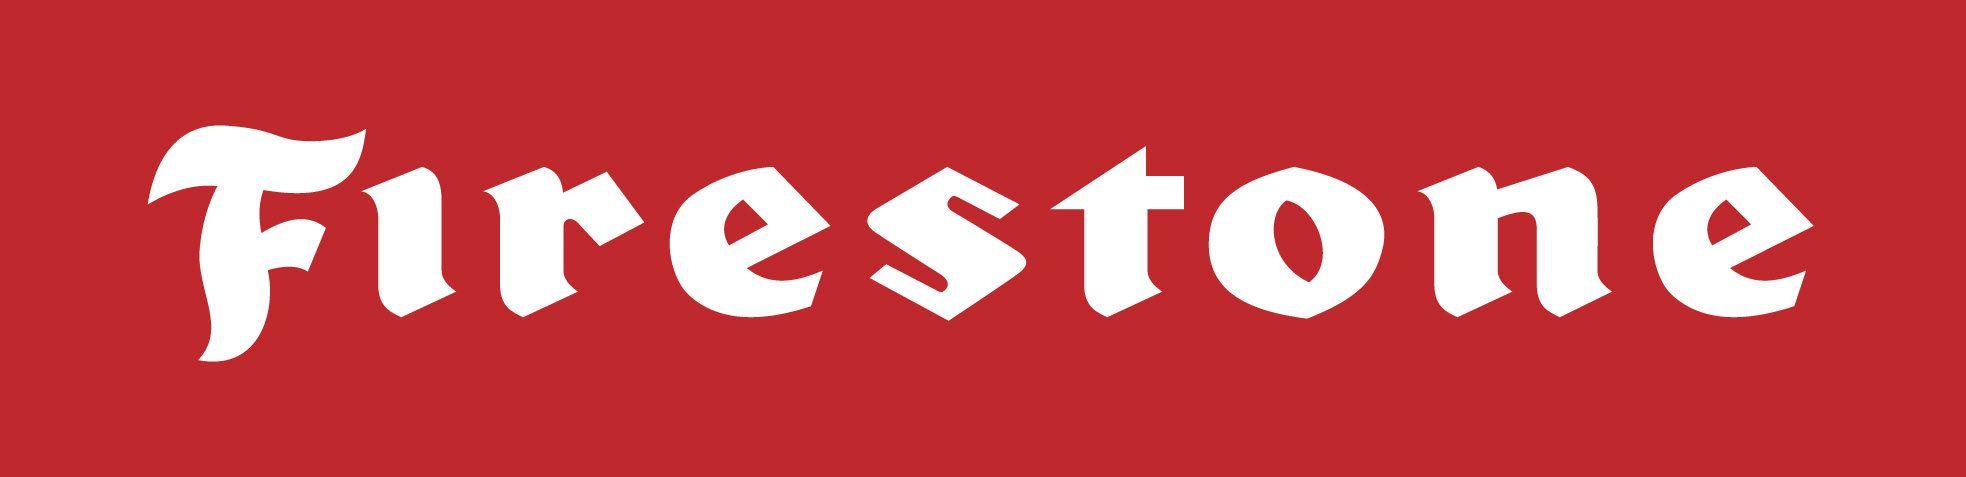 Vintage Firestone Logo - Firestone logo - Fonts In Use